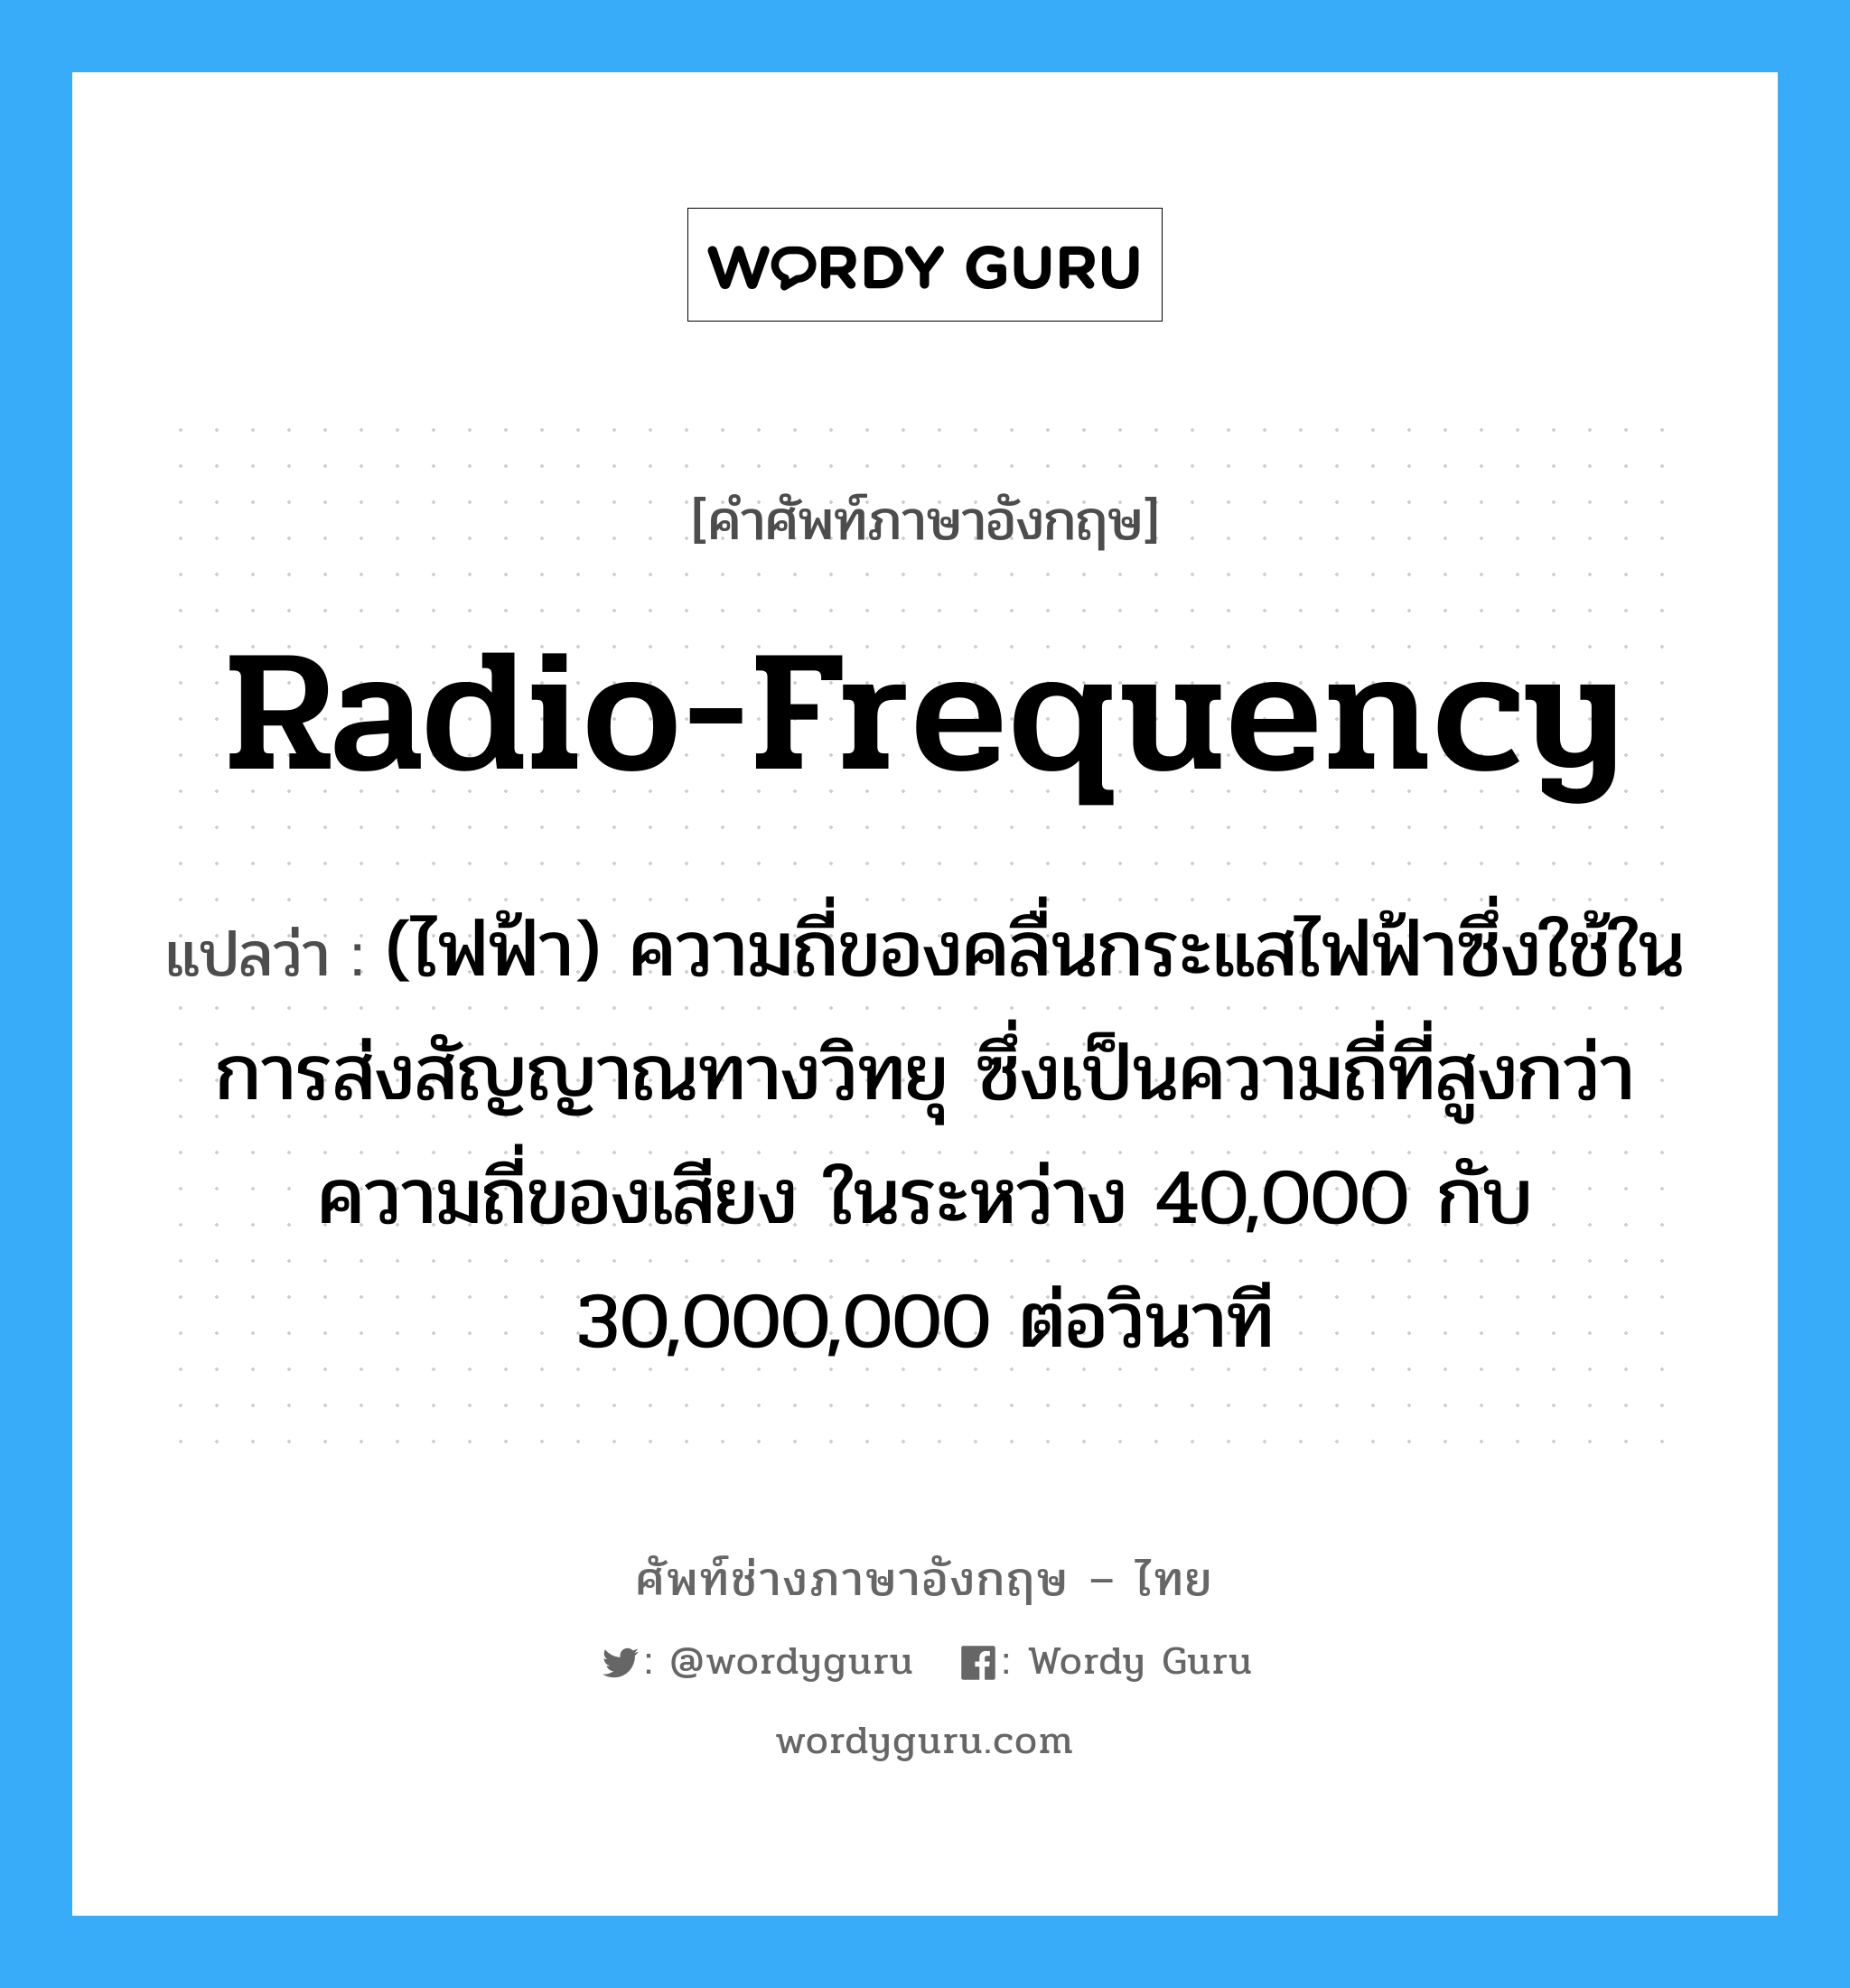 radio-frequency แปลว่า?, คำศัพท์ช่างภาษาอังกฤษ - ไทย radio-frequency คำศัพท์ภาษาอังกฤษ radio-frequency แปลว่า (ไฟฟ้า) ความถี่ของคลื่นกระแสไฟฟ้าซึ่งใช้ในการส่งสัญญาณทางวิทยุ ซึ่งเป็นความถี่ที่สูงกว่าความถี่ของเสียง ในระหว่าง 40,000 กับ 30,000,000 ต่อวินาที